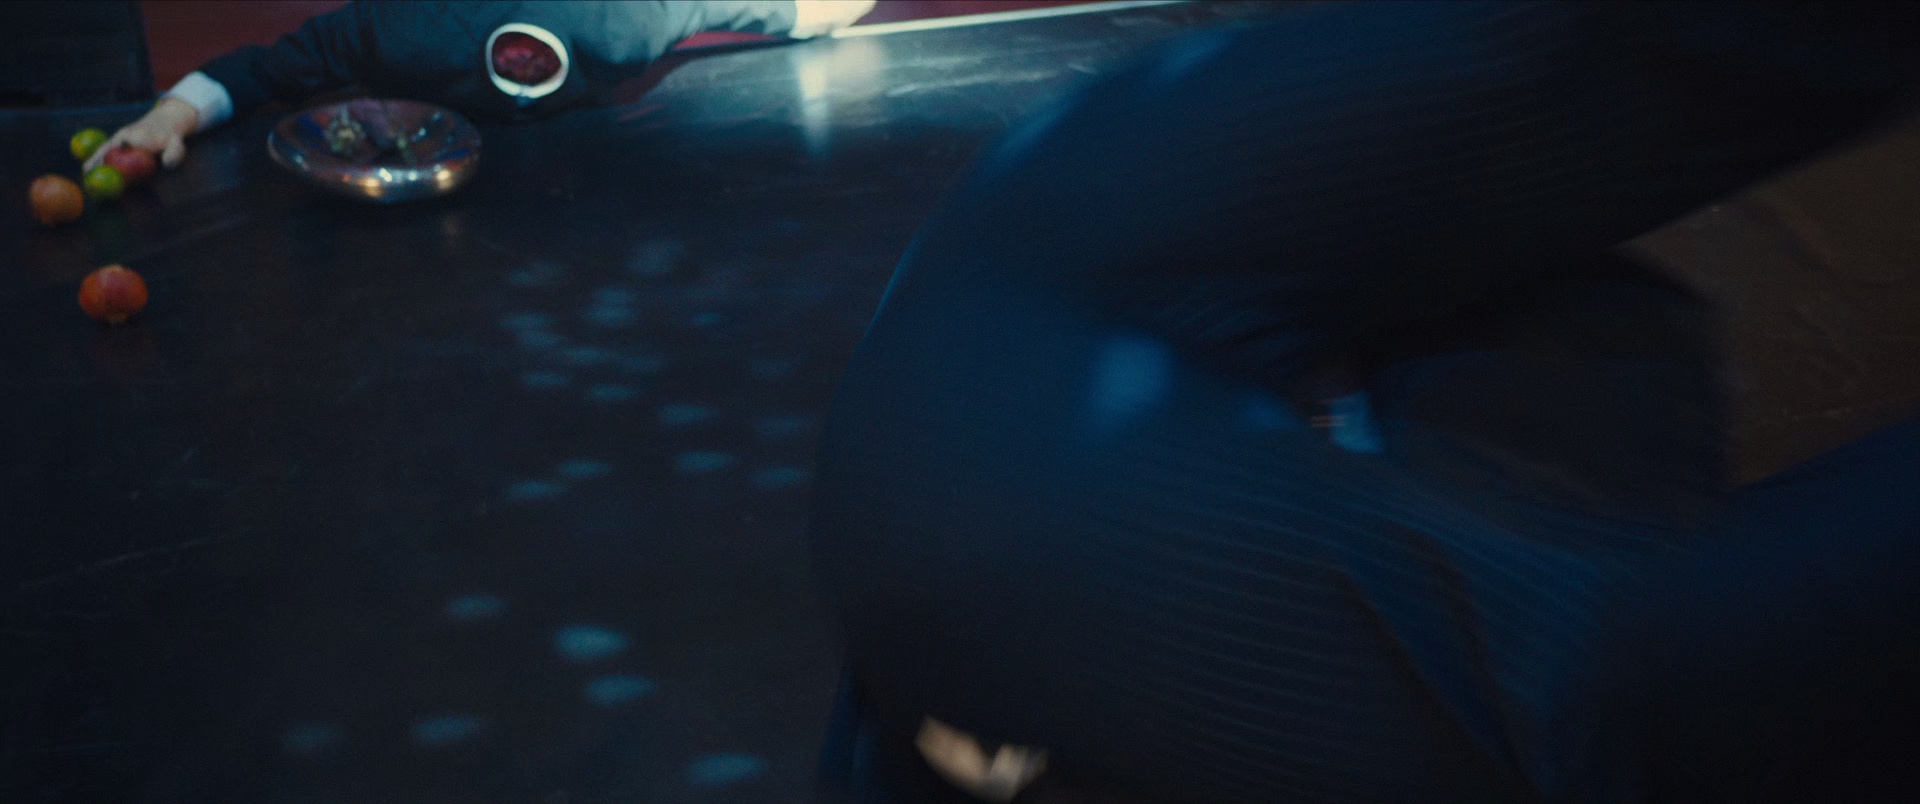 王牌奸细[共2部合集][简繁英字幕].Kingsman.1-2.2014-2017.BluRay.1080p.DTS-HD.MA.7.1.x265.10bit-ALT 23.41GB-7.jpeg